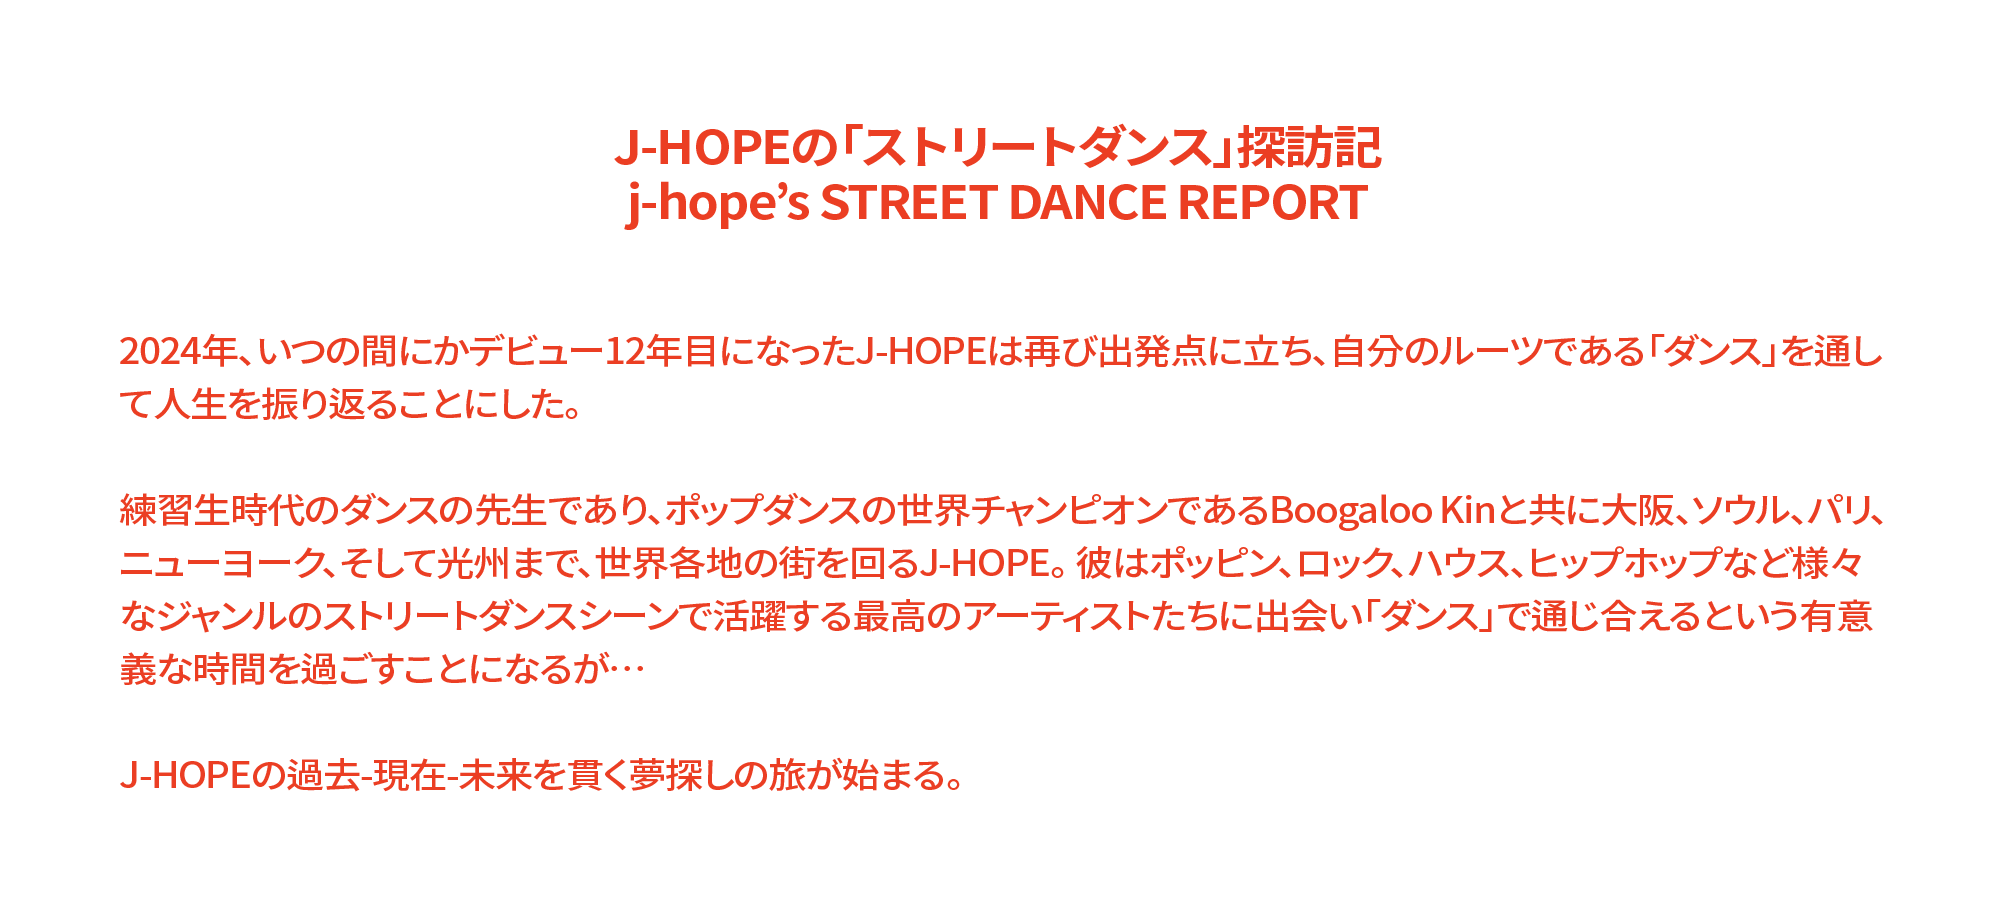 J-HOPEの「ストリートダンス」探訪記 j-hope’s STREET DANCE REPORT 2024年、いつの間にかデビュー12年目になったJ-HOPEは再び出発点に立ち、自分のルーツである「ダンス」を通して人生を振り返ることにした。 練習生時代のダンスの先生であり、ポップダンスの世界チャンピオンであるBoogaloo Kinと共に大阪、ソウル、パリ、ニューヨーク、そして光州まで、世界各地の街を回るJ-HOPE。 彼はポッピン、ロック、ハウス、ヒップホップなど様々なジャンルのストリートダンスシーンで活躍する最高のアーティストたちに出会い「ダンス」で通じ合えるという有意義な時間を過ごすことになるが… J-HOPEの過去-現在-未来を貫く夢探しの旅が始まる。